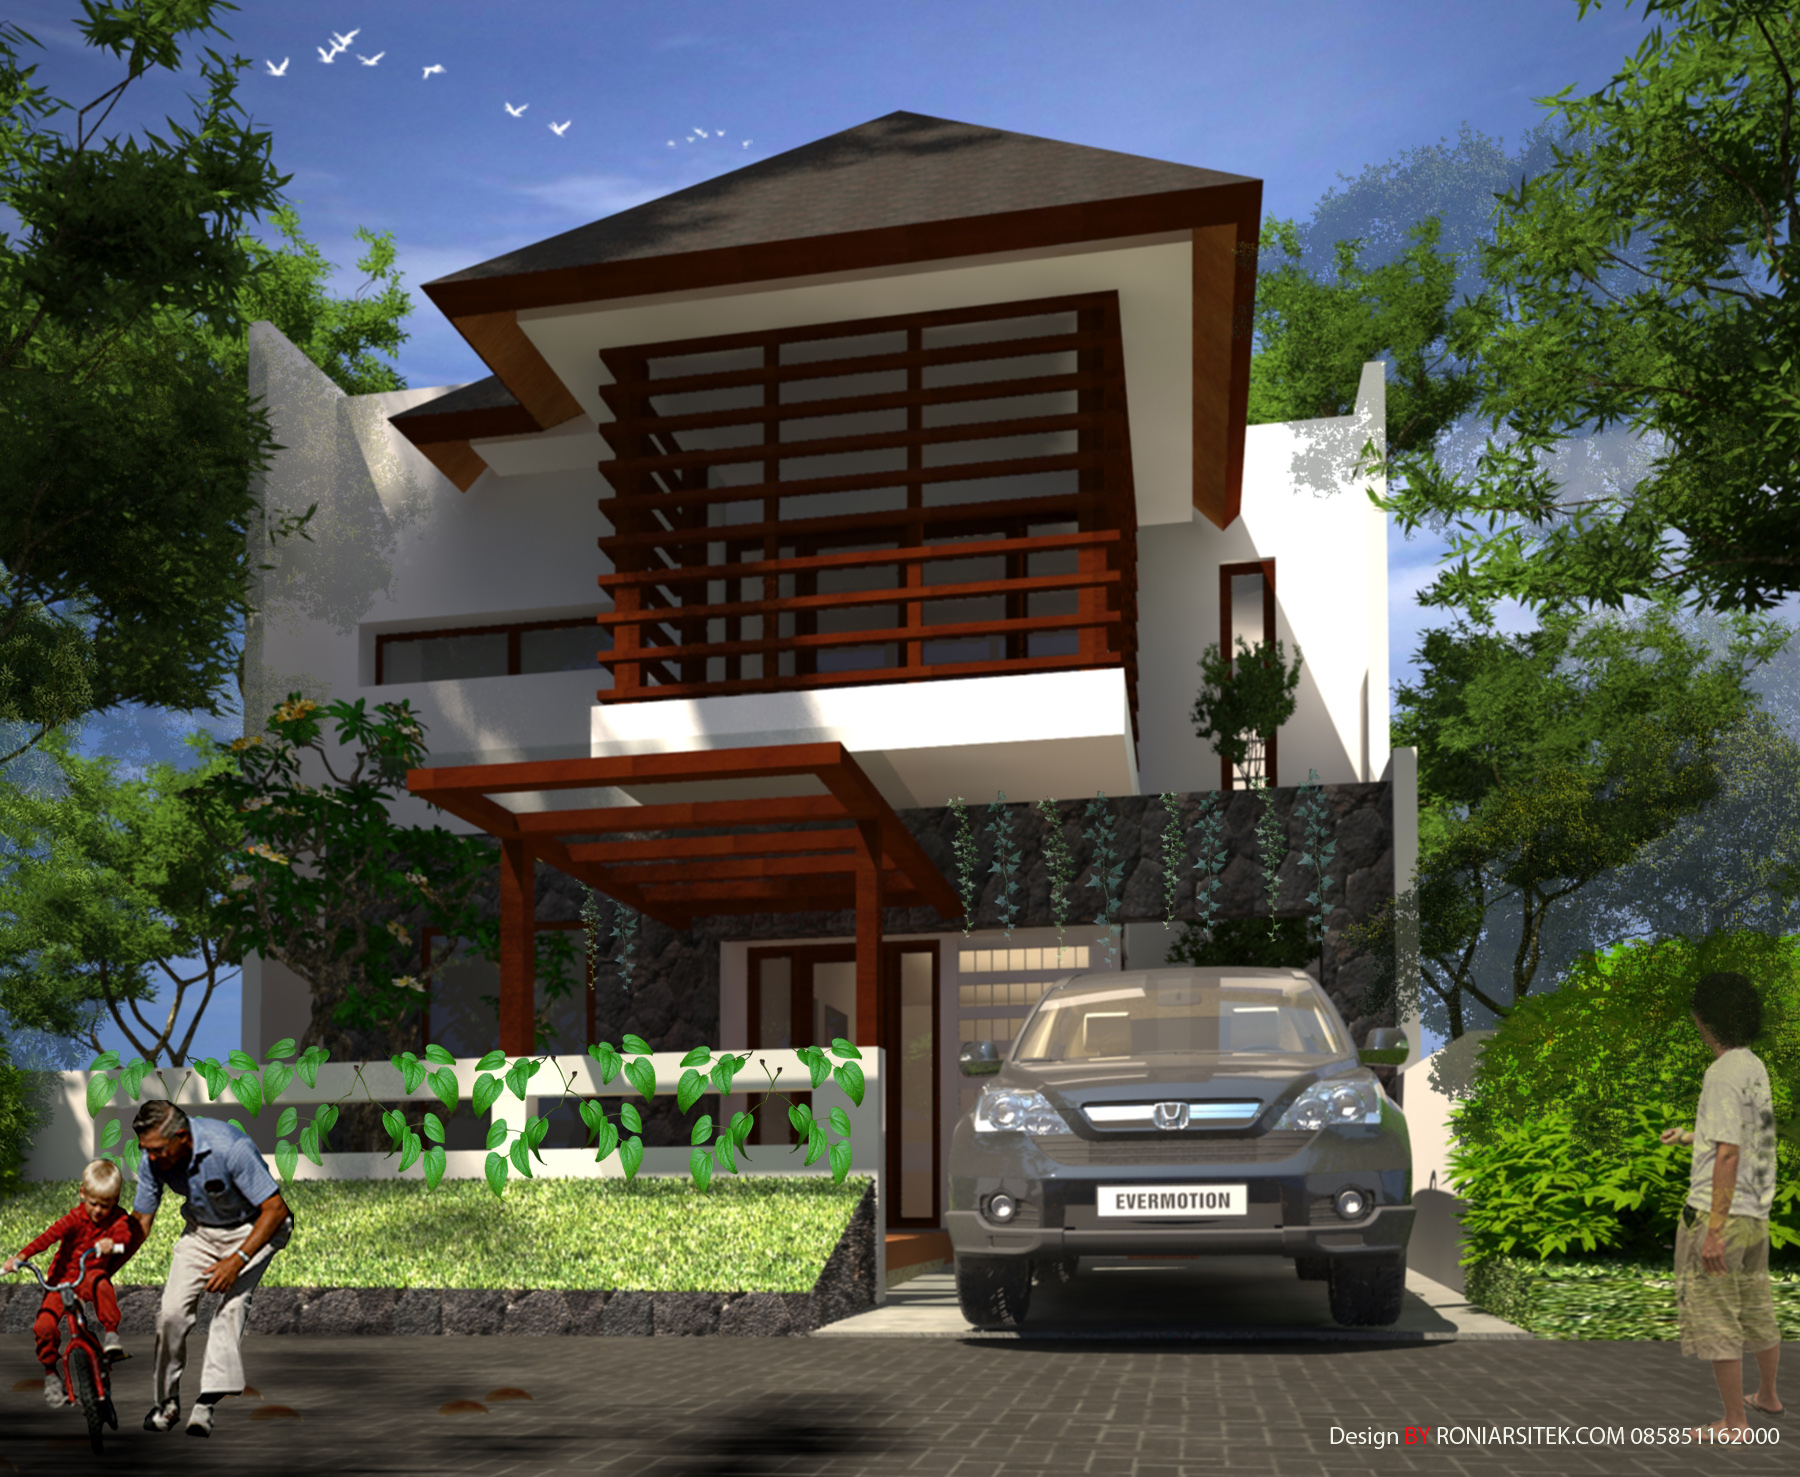  Desain Rumah Bali Tropis 2 Lantai  Mabudi com